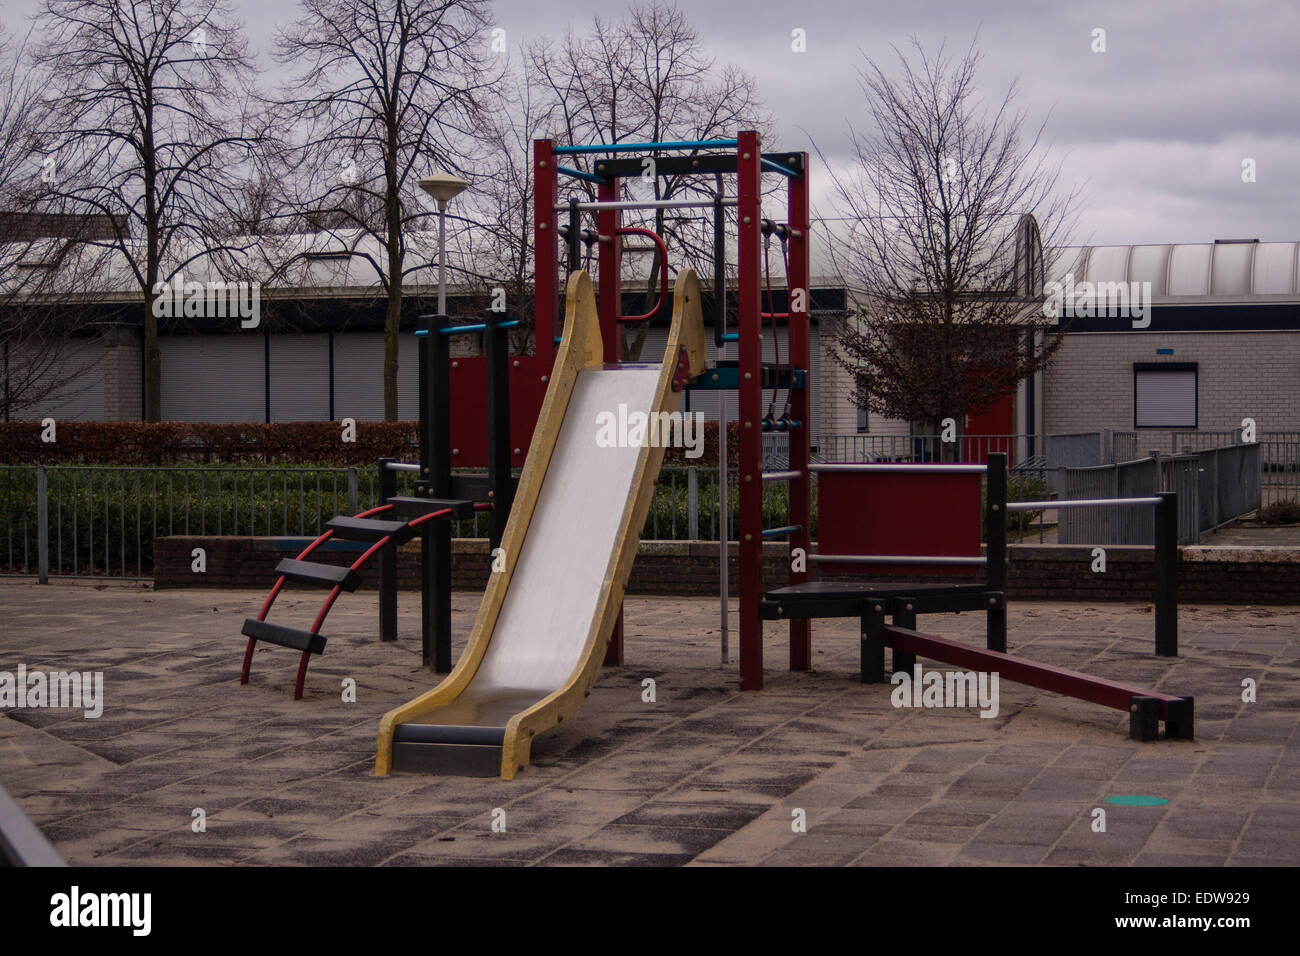 Aire de jeux pour enfants moderne près d'une école à Nimègue, Pays-Bas Banque D'Images